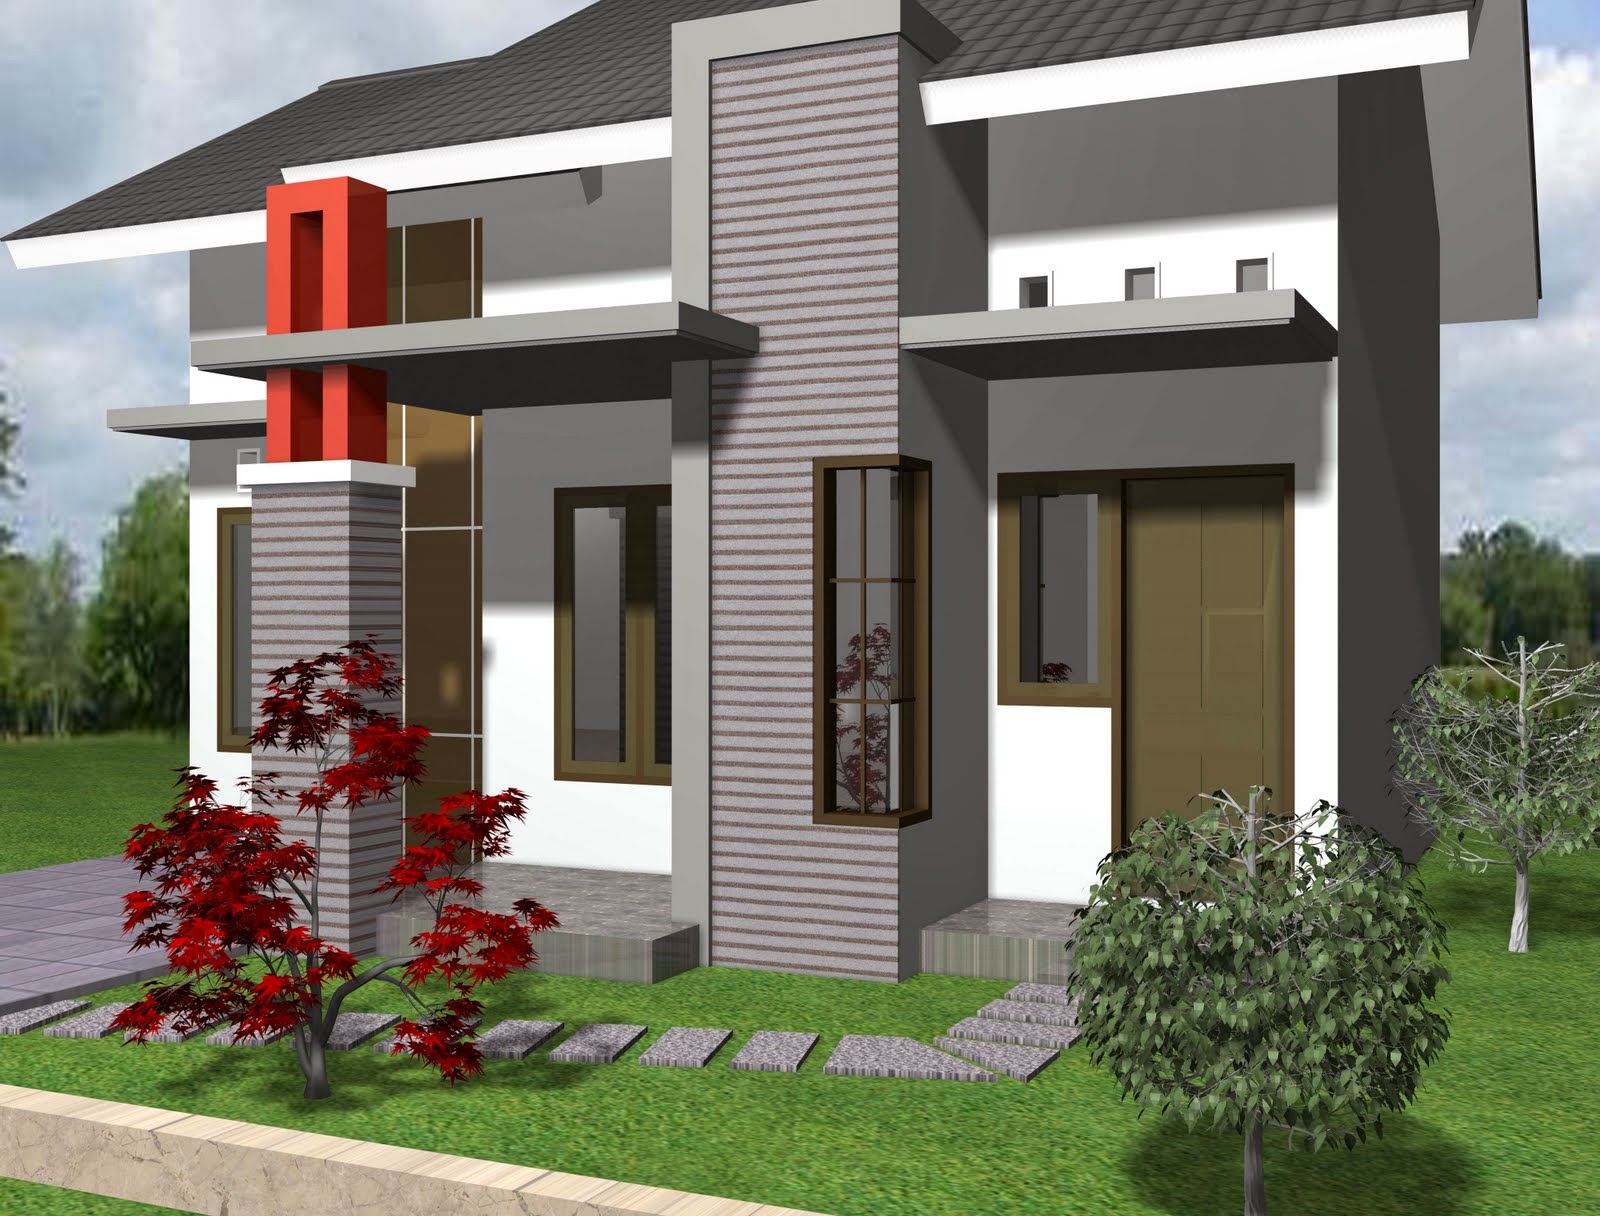  Desain  Rumah  1 Lantai Terbaru Konsep Desain  Rumah 